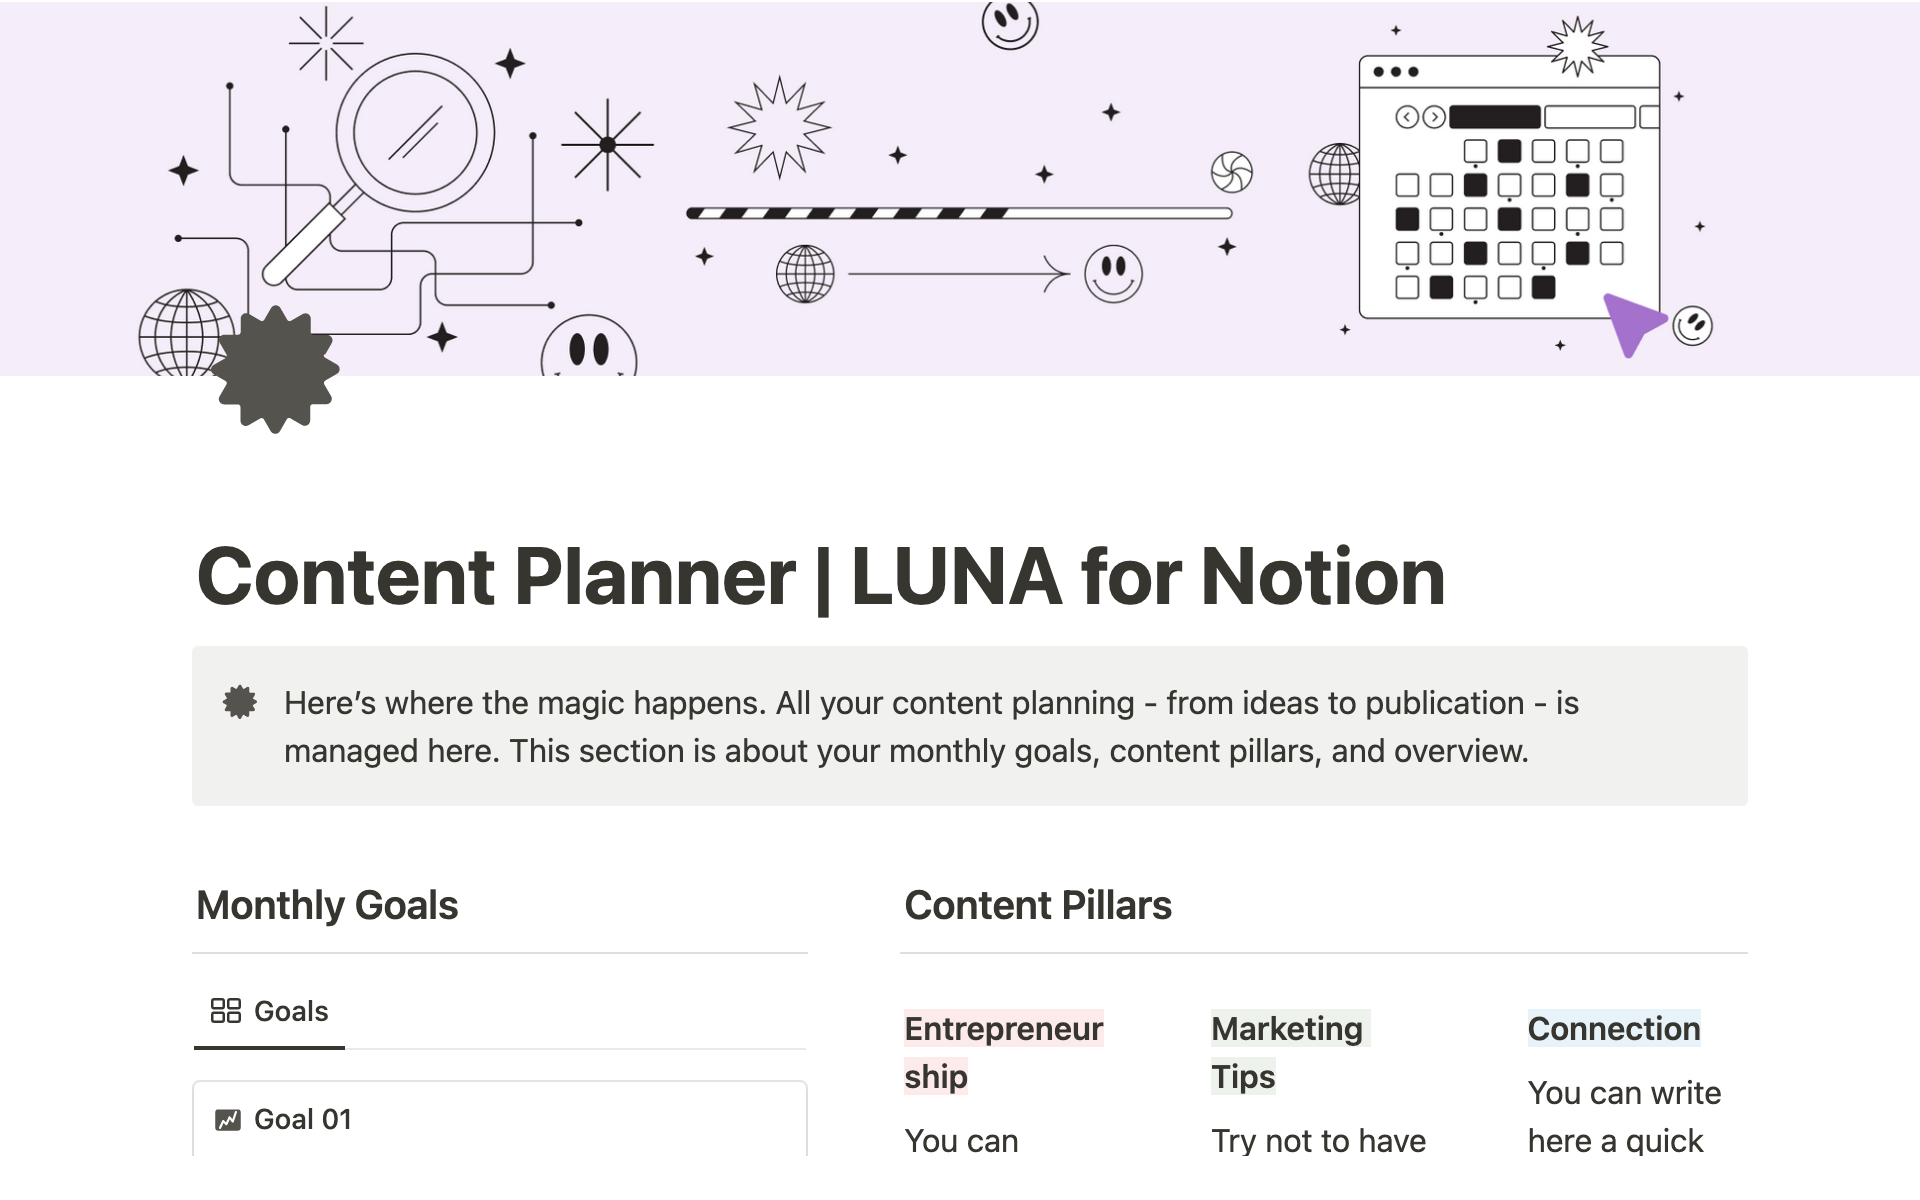 Uma prévia do modelo para Content Planner